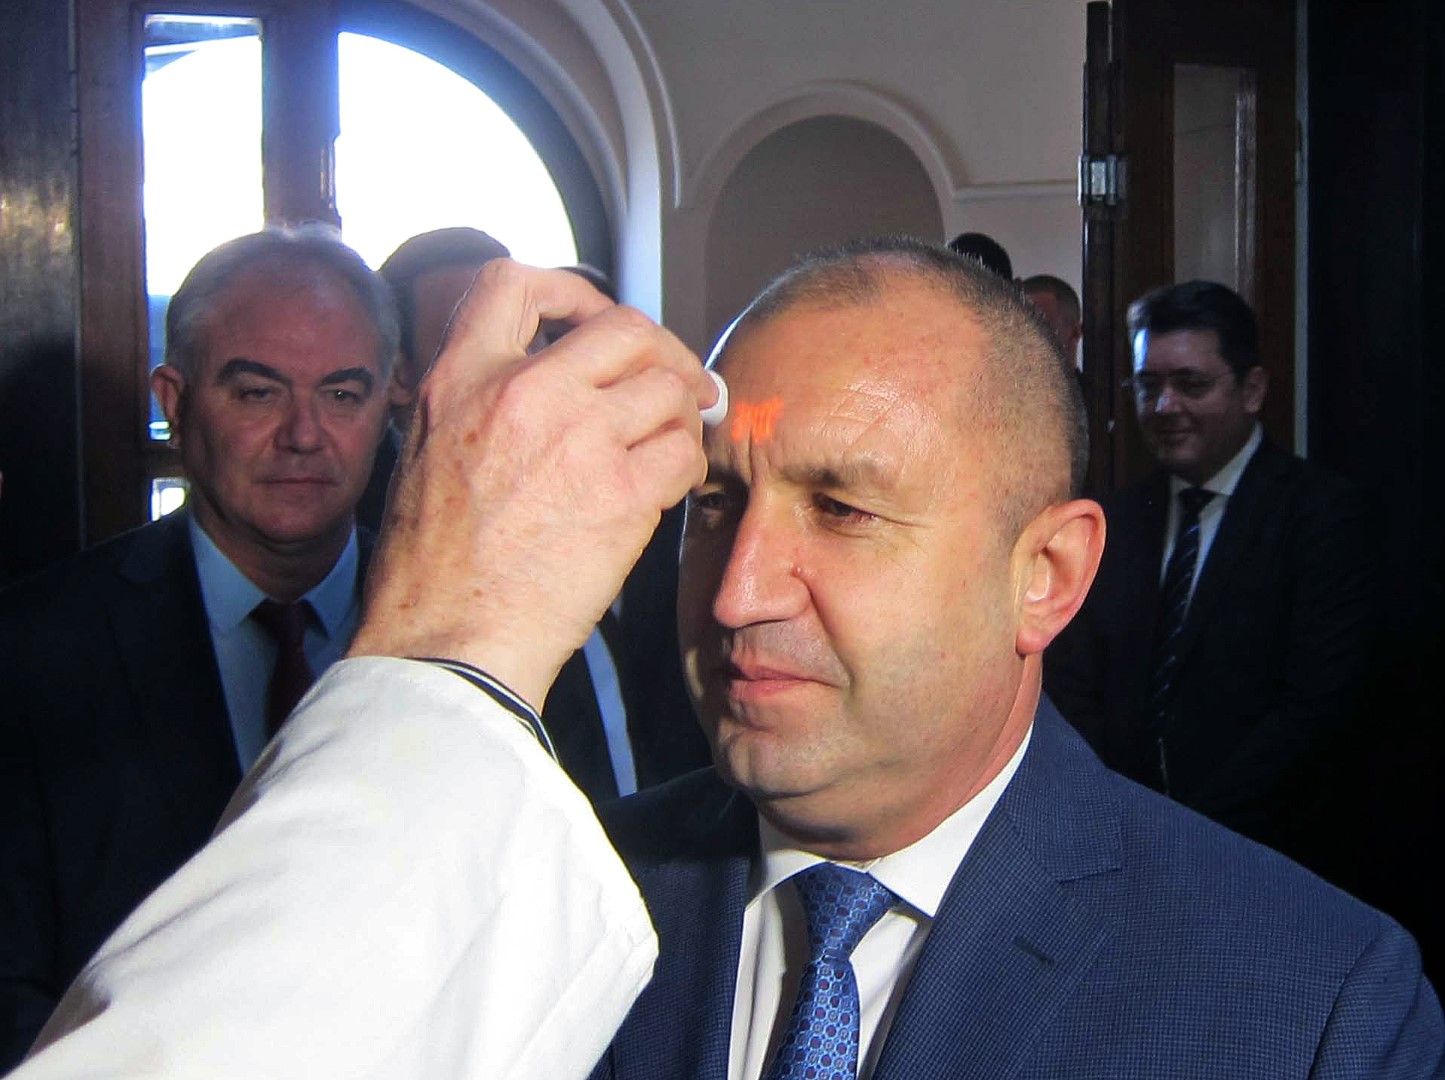 На 12 март президентът Румен Радев посети Плевен. В сградата на Общината премериха температурата му, там се срещна с кмета Георг Спартански (ляво), както и с представители на местните здравни институции